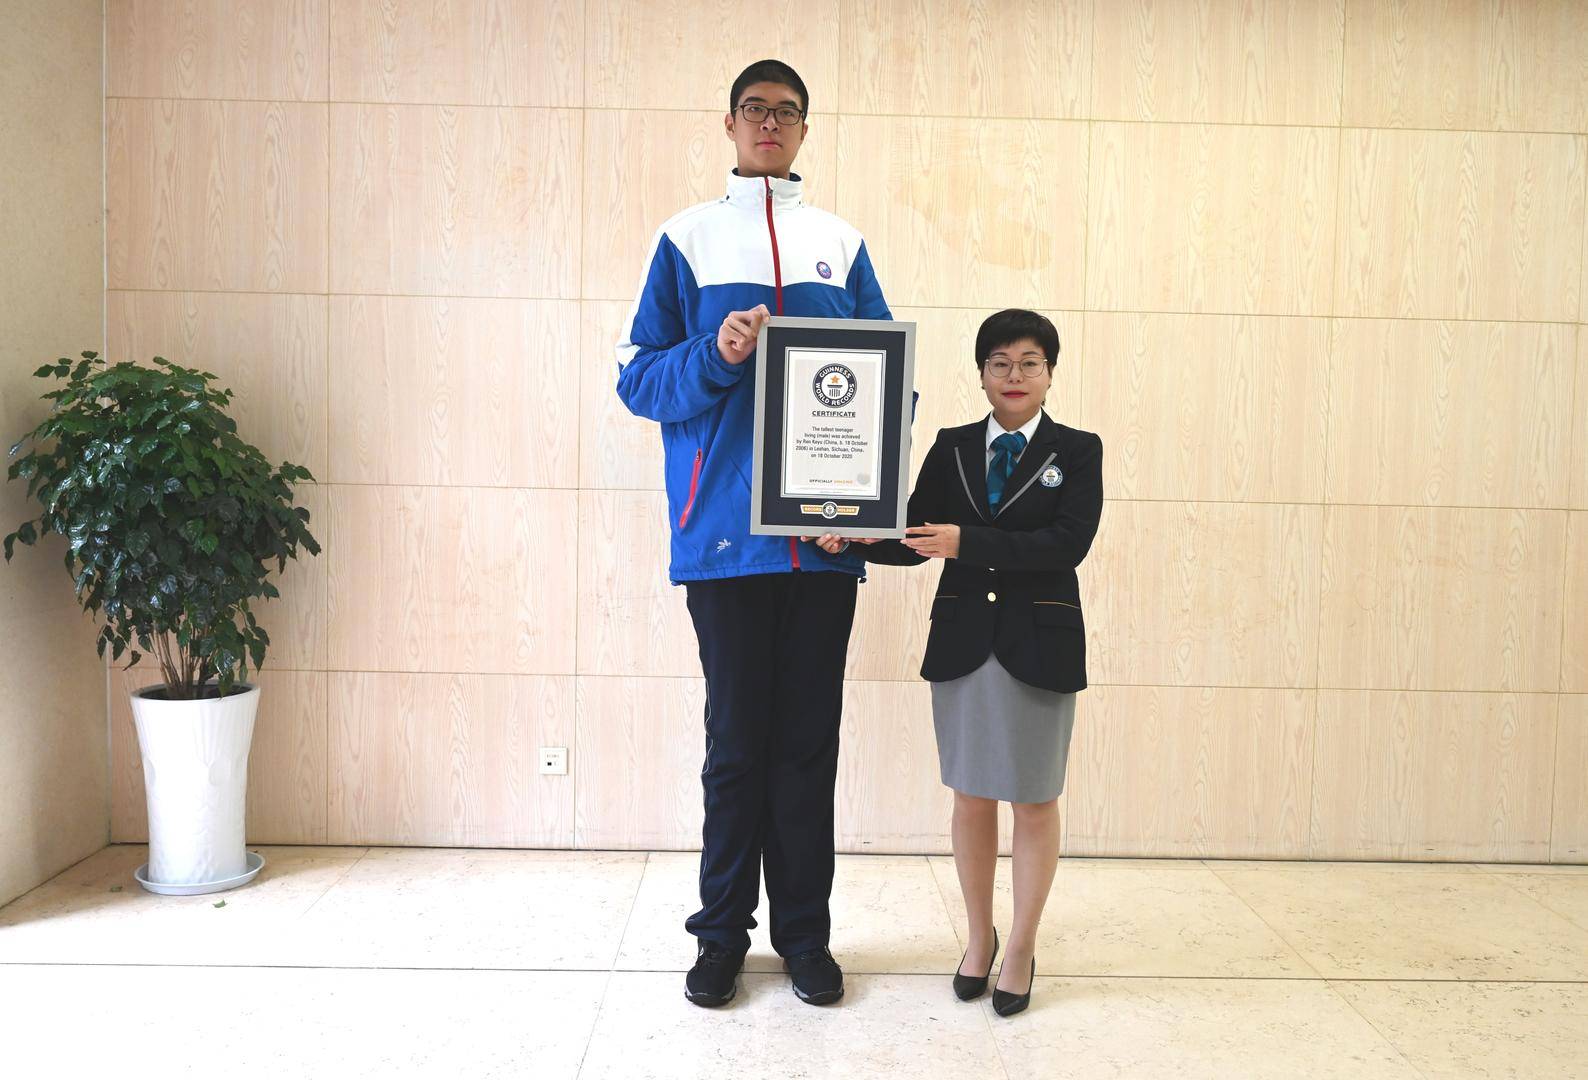 身高223米!17岁男生参加高考,14岁时曾创最高青少年吉尼斯世界纪录